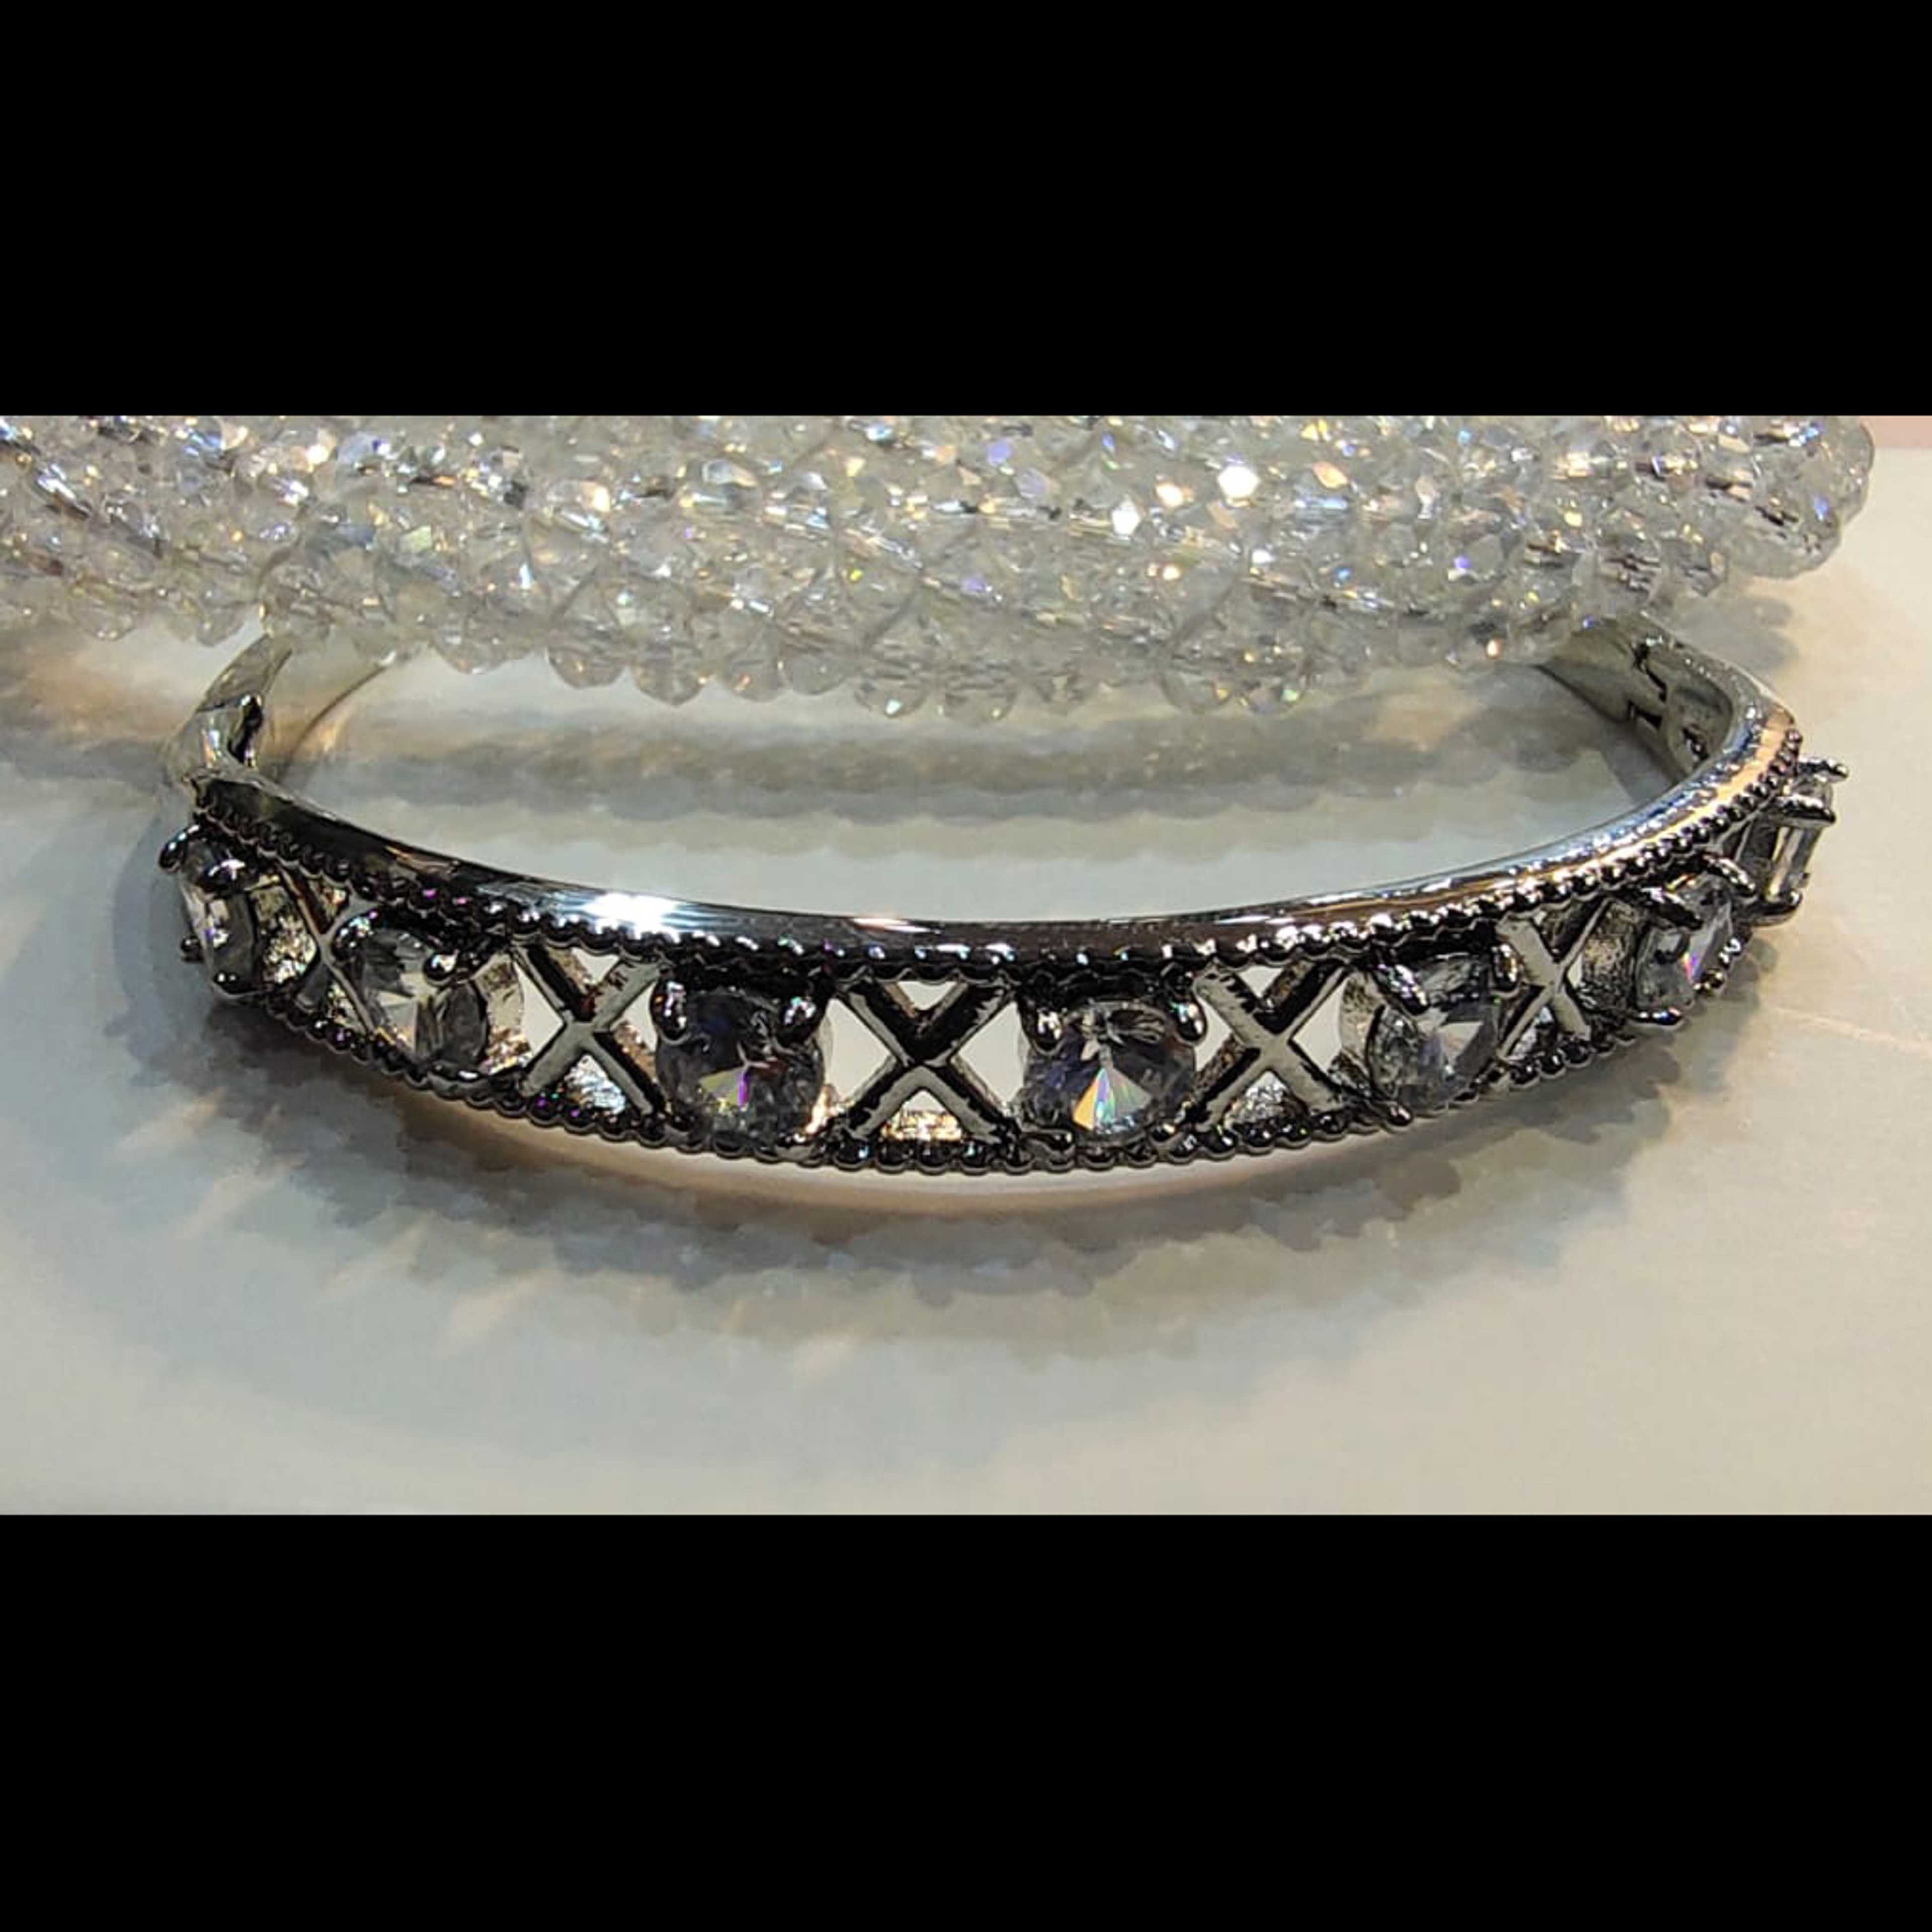 Imported Bracelet with Zircon Stones